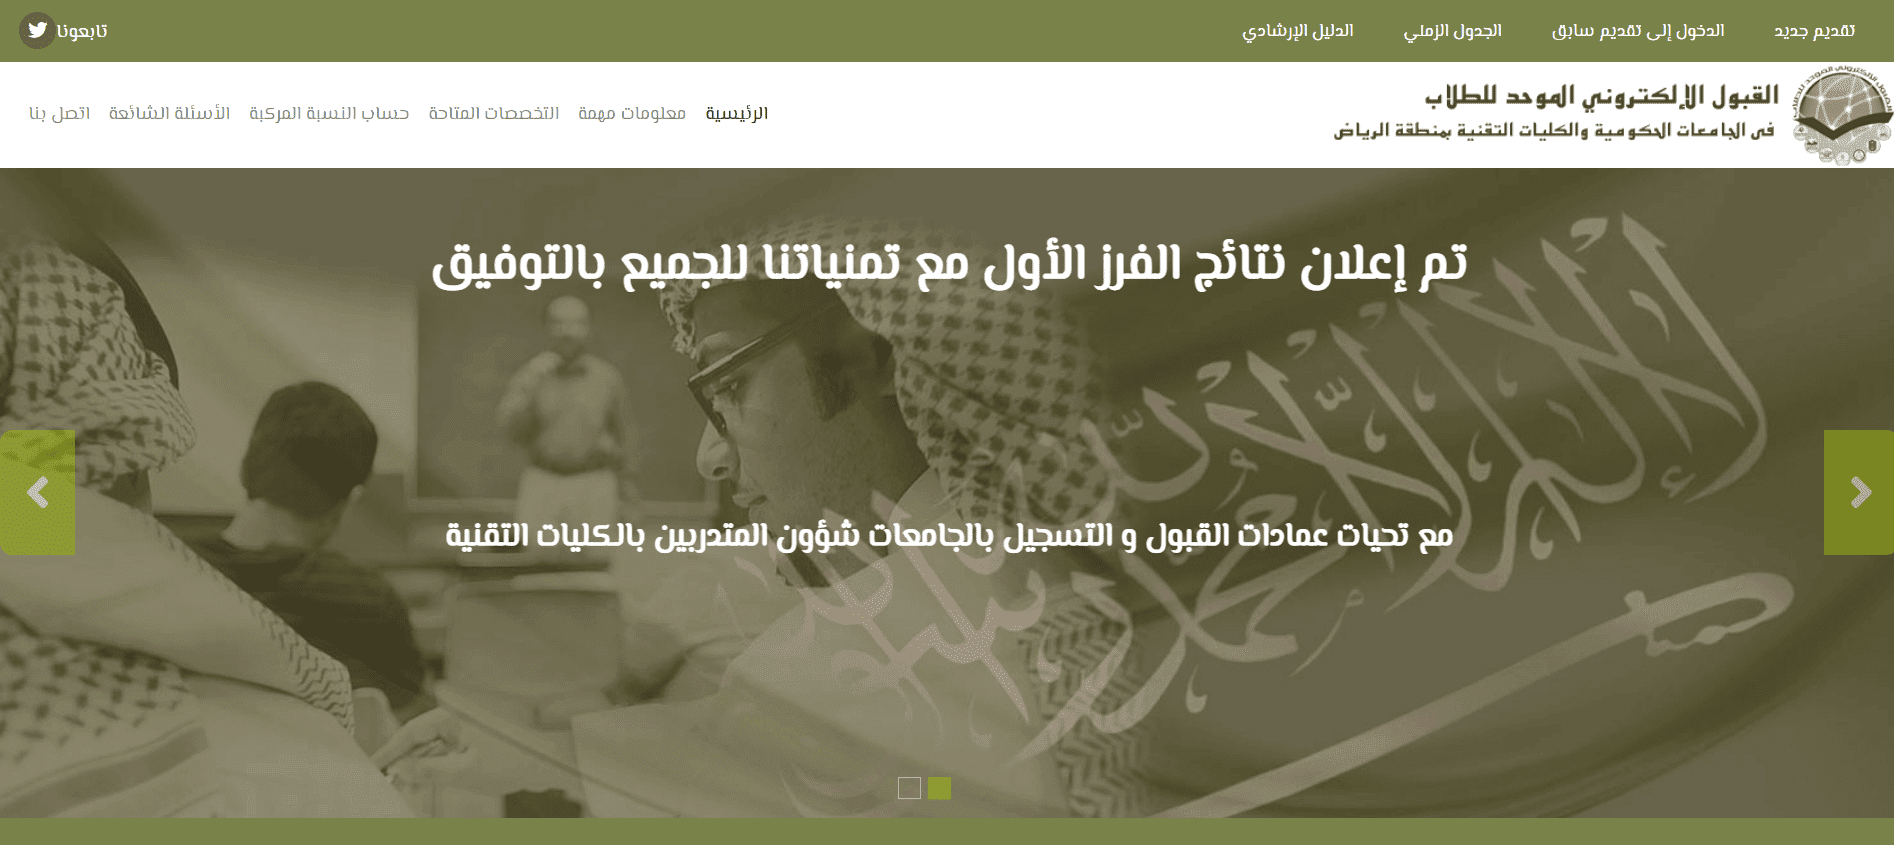 رابط القبول الالكتروني الموحد للطلاب بالسعودية